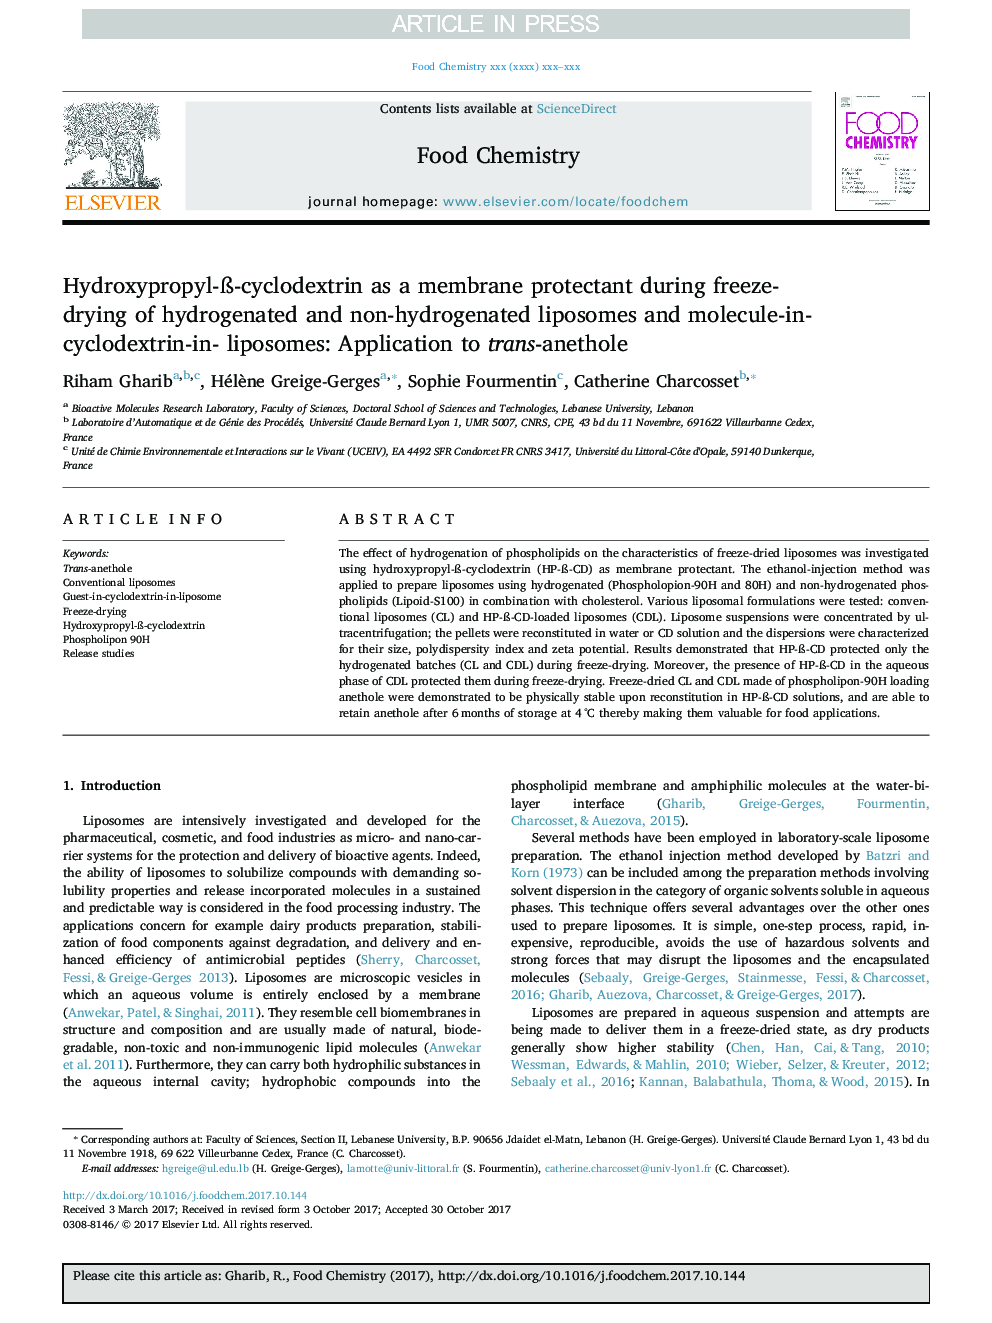 Hydroxypropyl-Ã-cyclodextrin as a membrane protectant during freeze-drying of hydrogenated and non-hydrogenated liposomes and molecule-in-cyclodextrin-in- liposomes: Application to trans-anethole